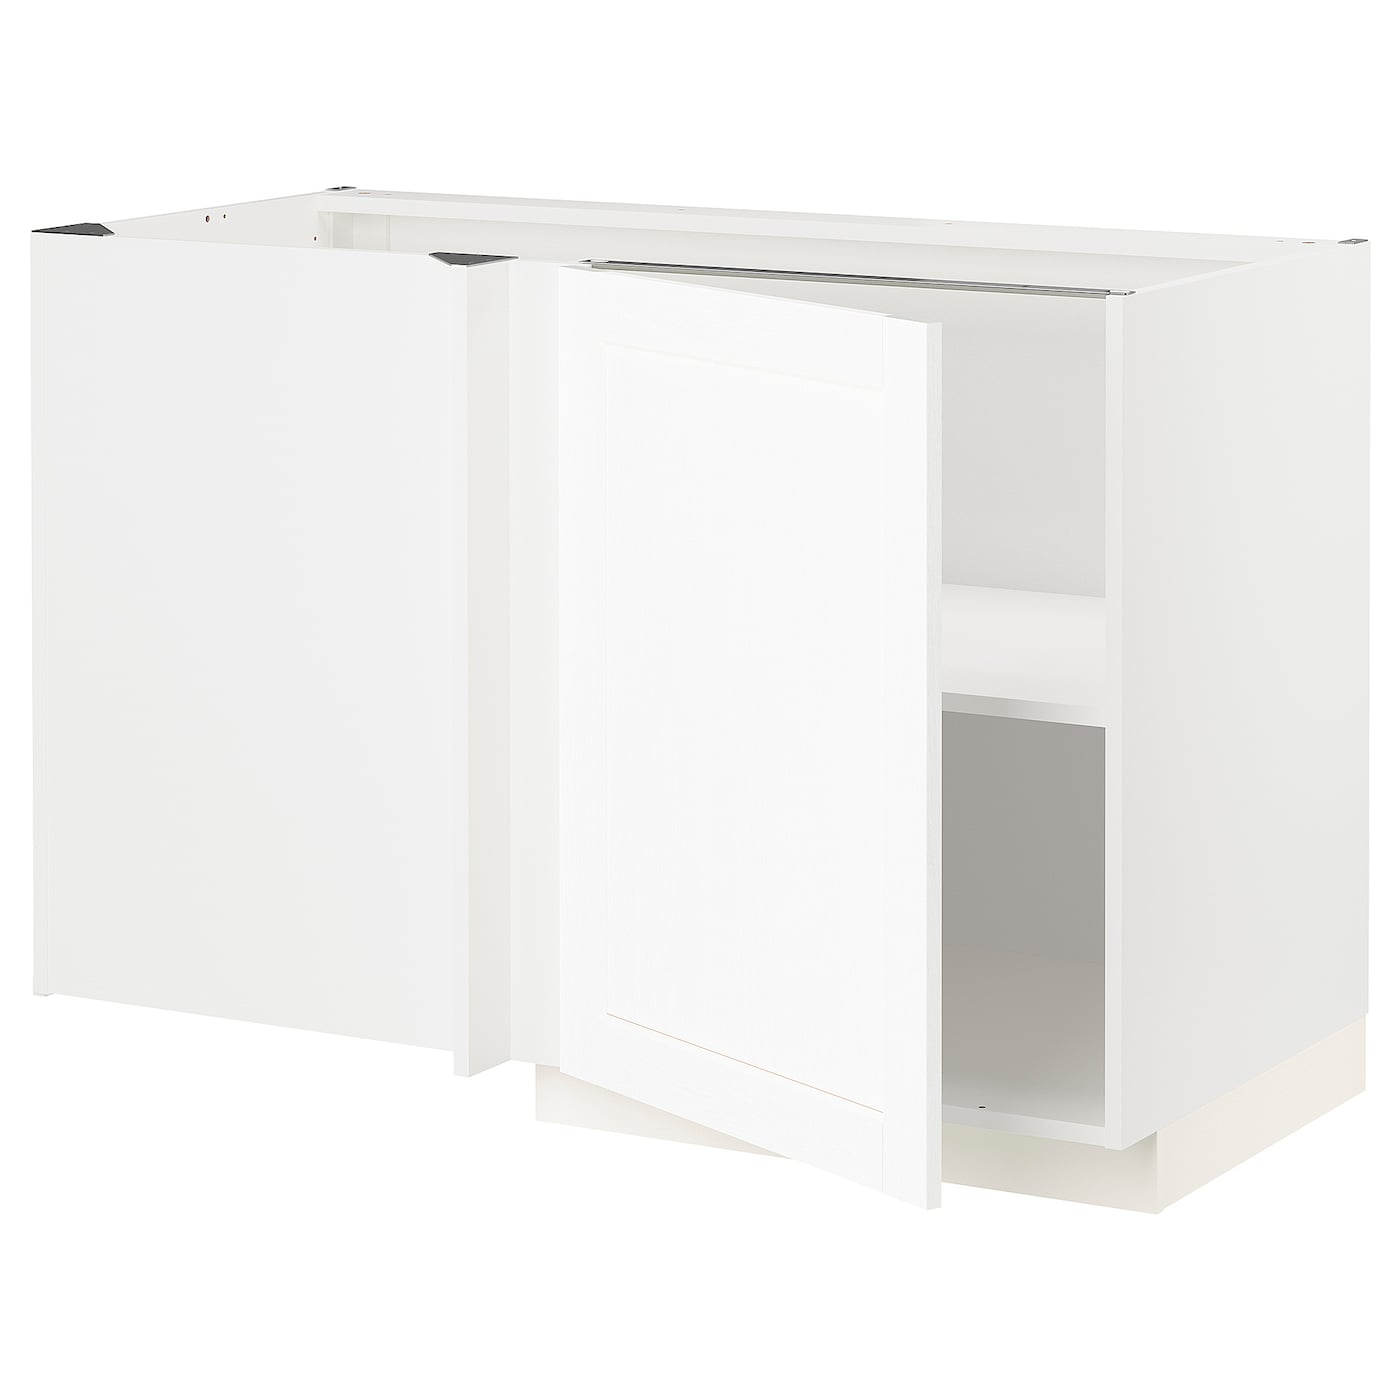 Напольный кухонный шкаф  - IKEA METOD, 88x67,5x127,5см, белый, МЕТОД ИКЕА